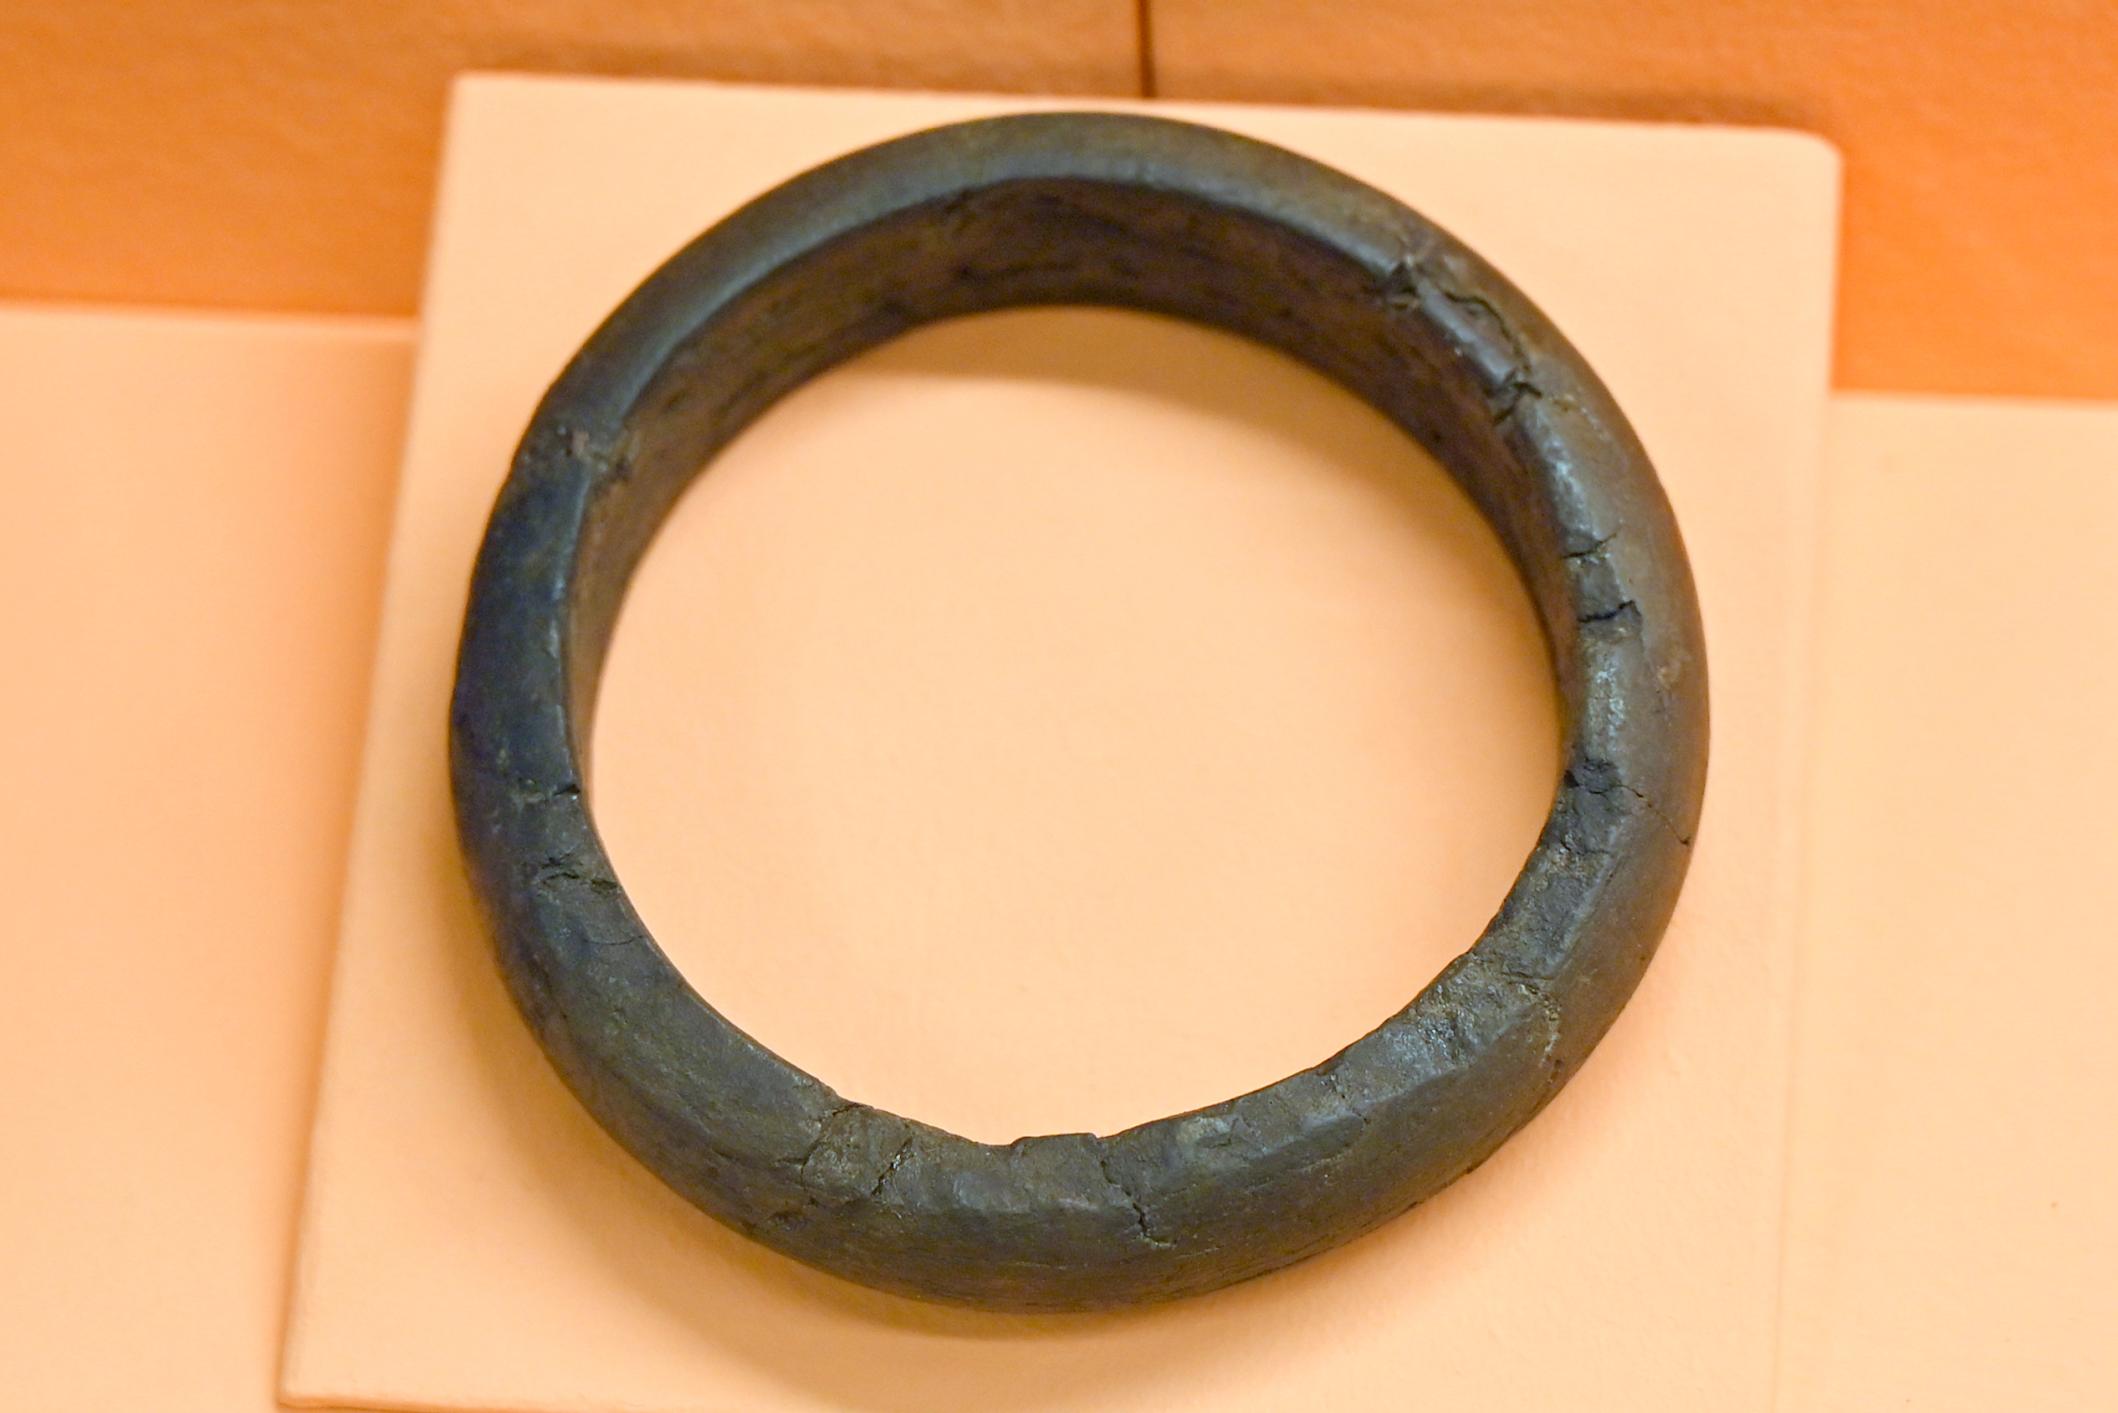 Armring aus Xylit (Holz aus der Braunkohle), Hallstattzeit, 700 - 200 v. Chr.